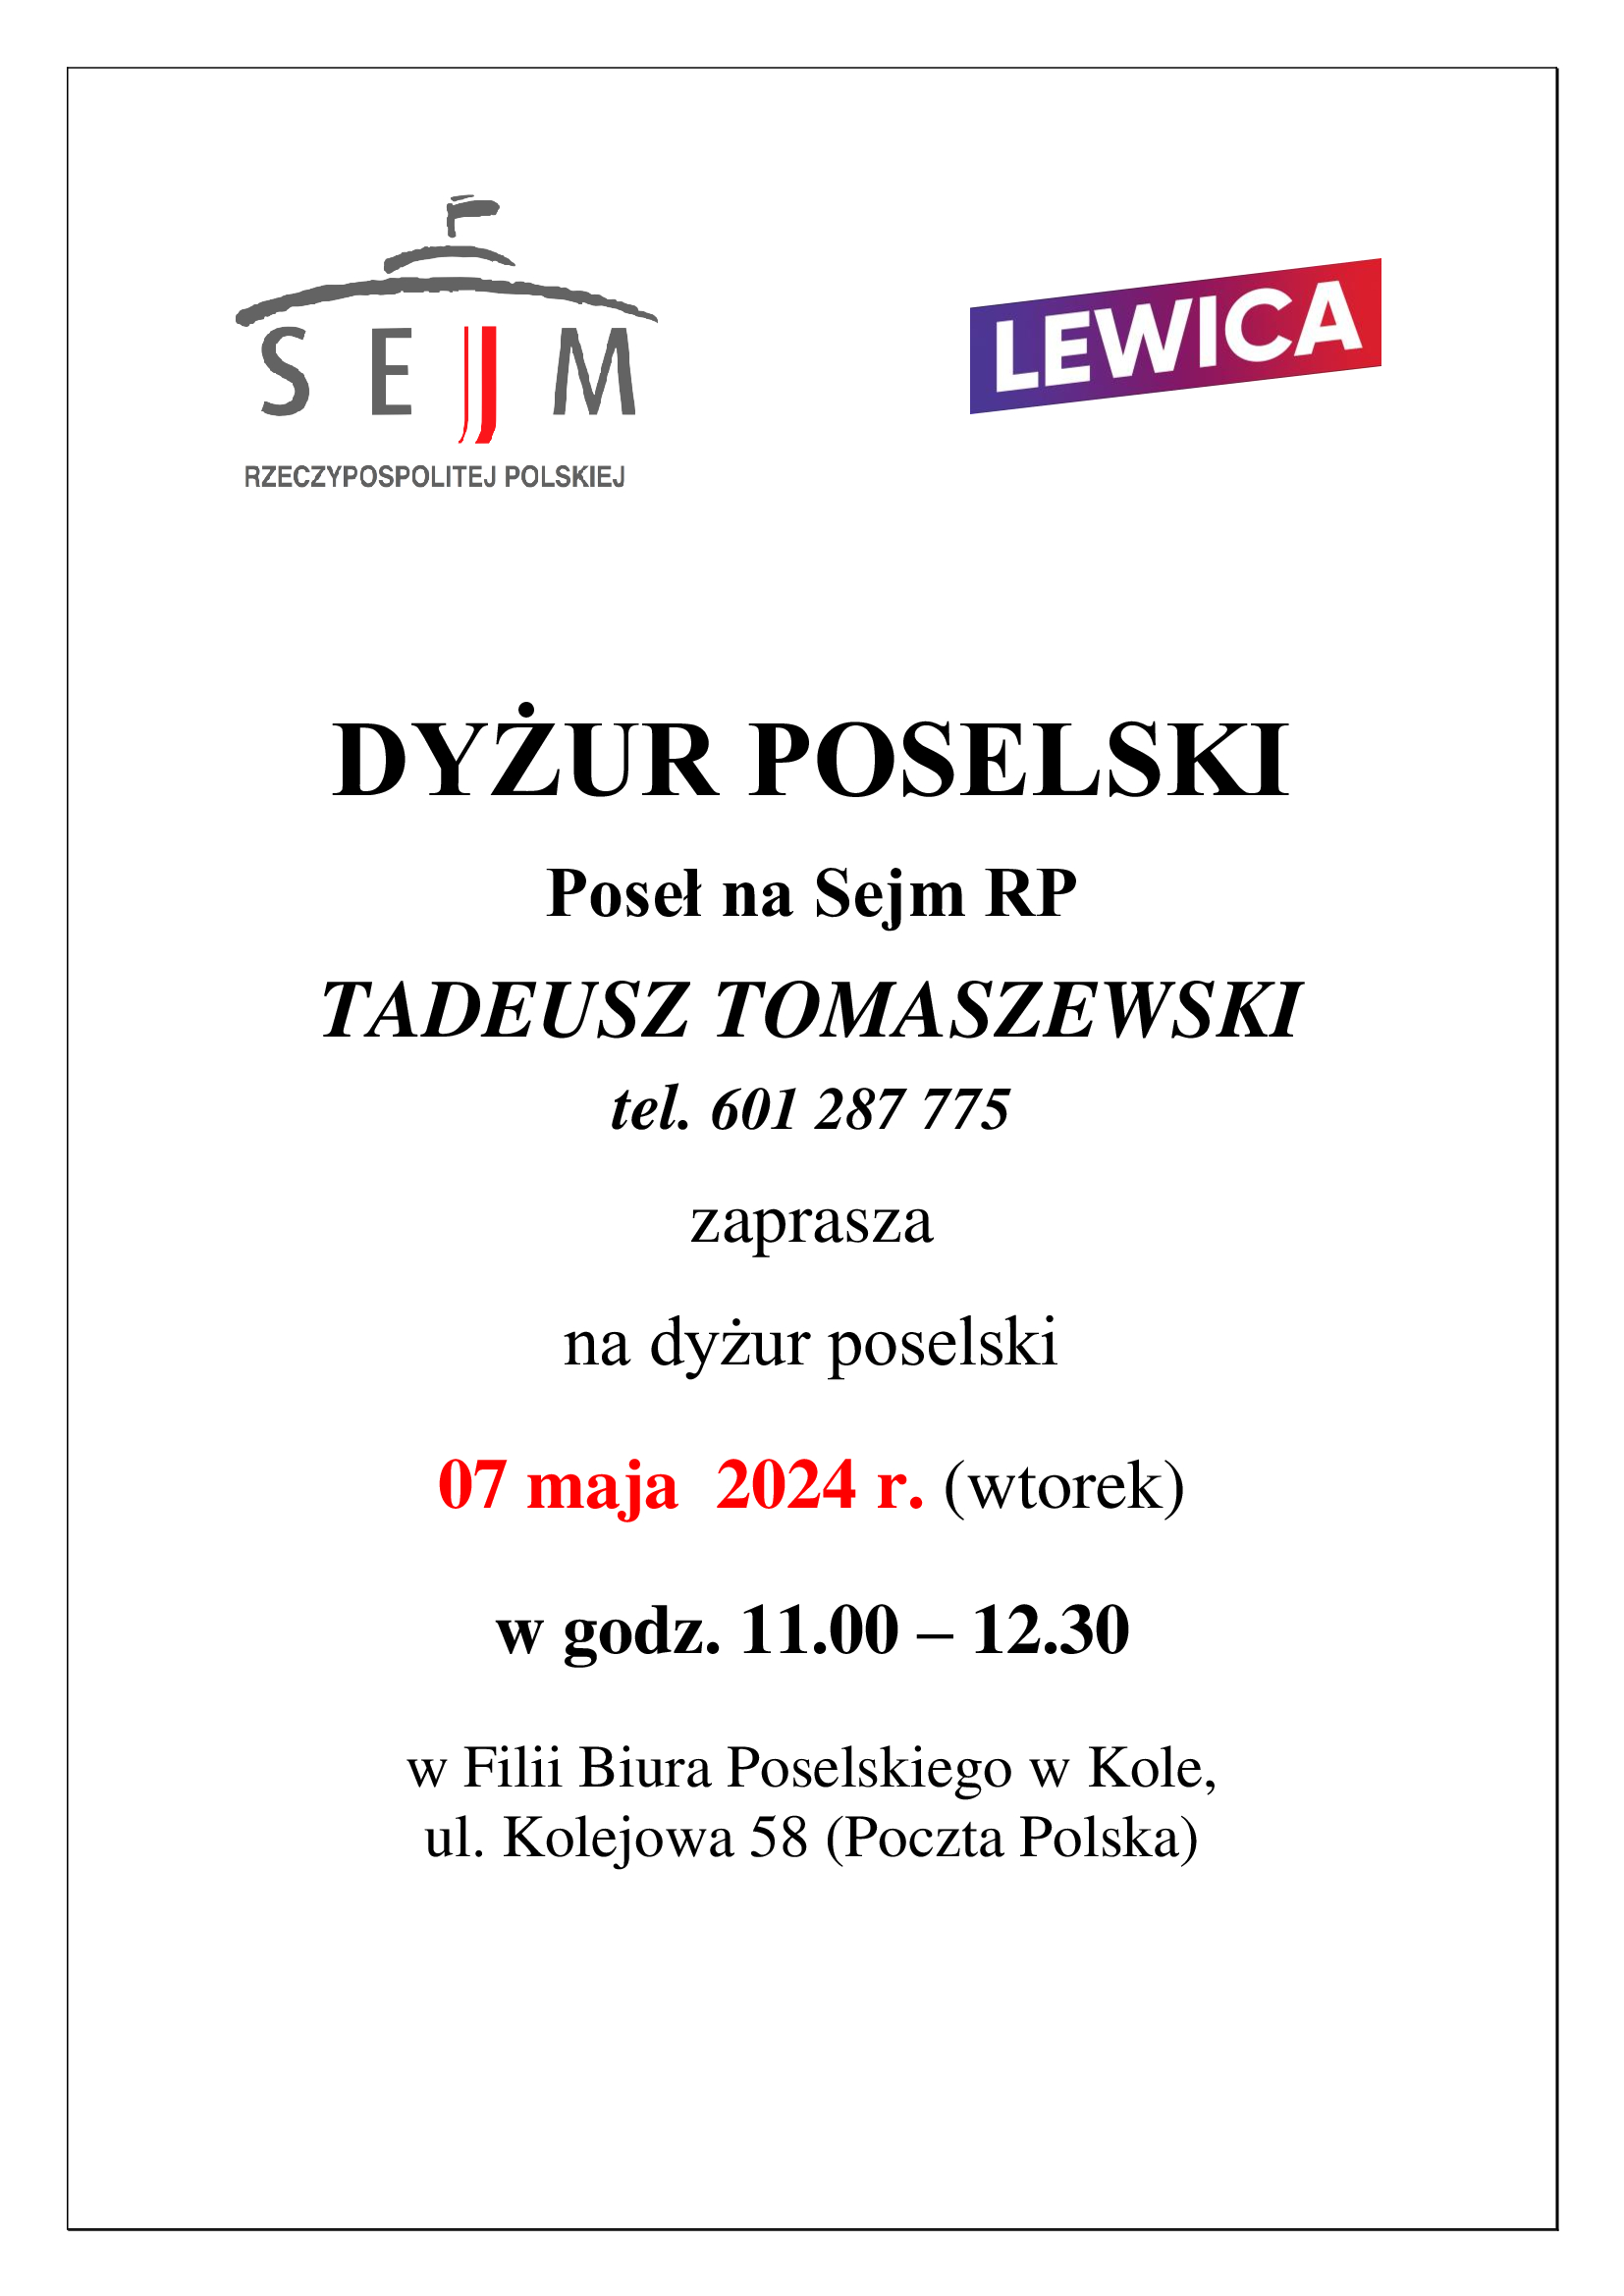 Infografika o dyżurze poselskim Tadeusza Tomaszewskiego, tekst pod infografiką.